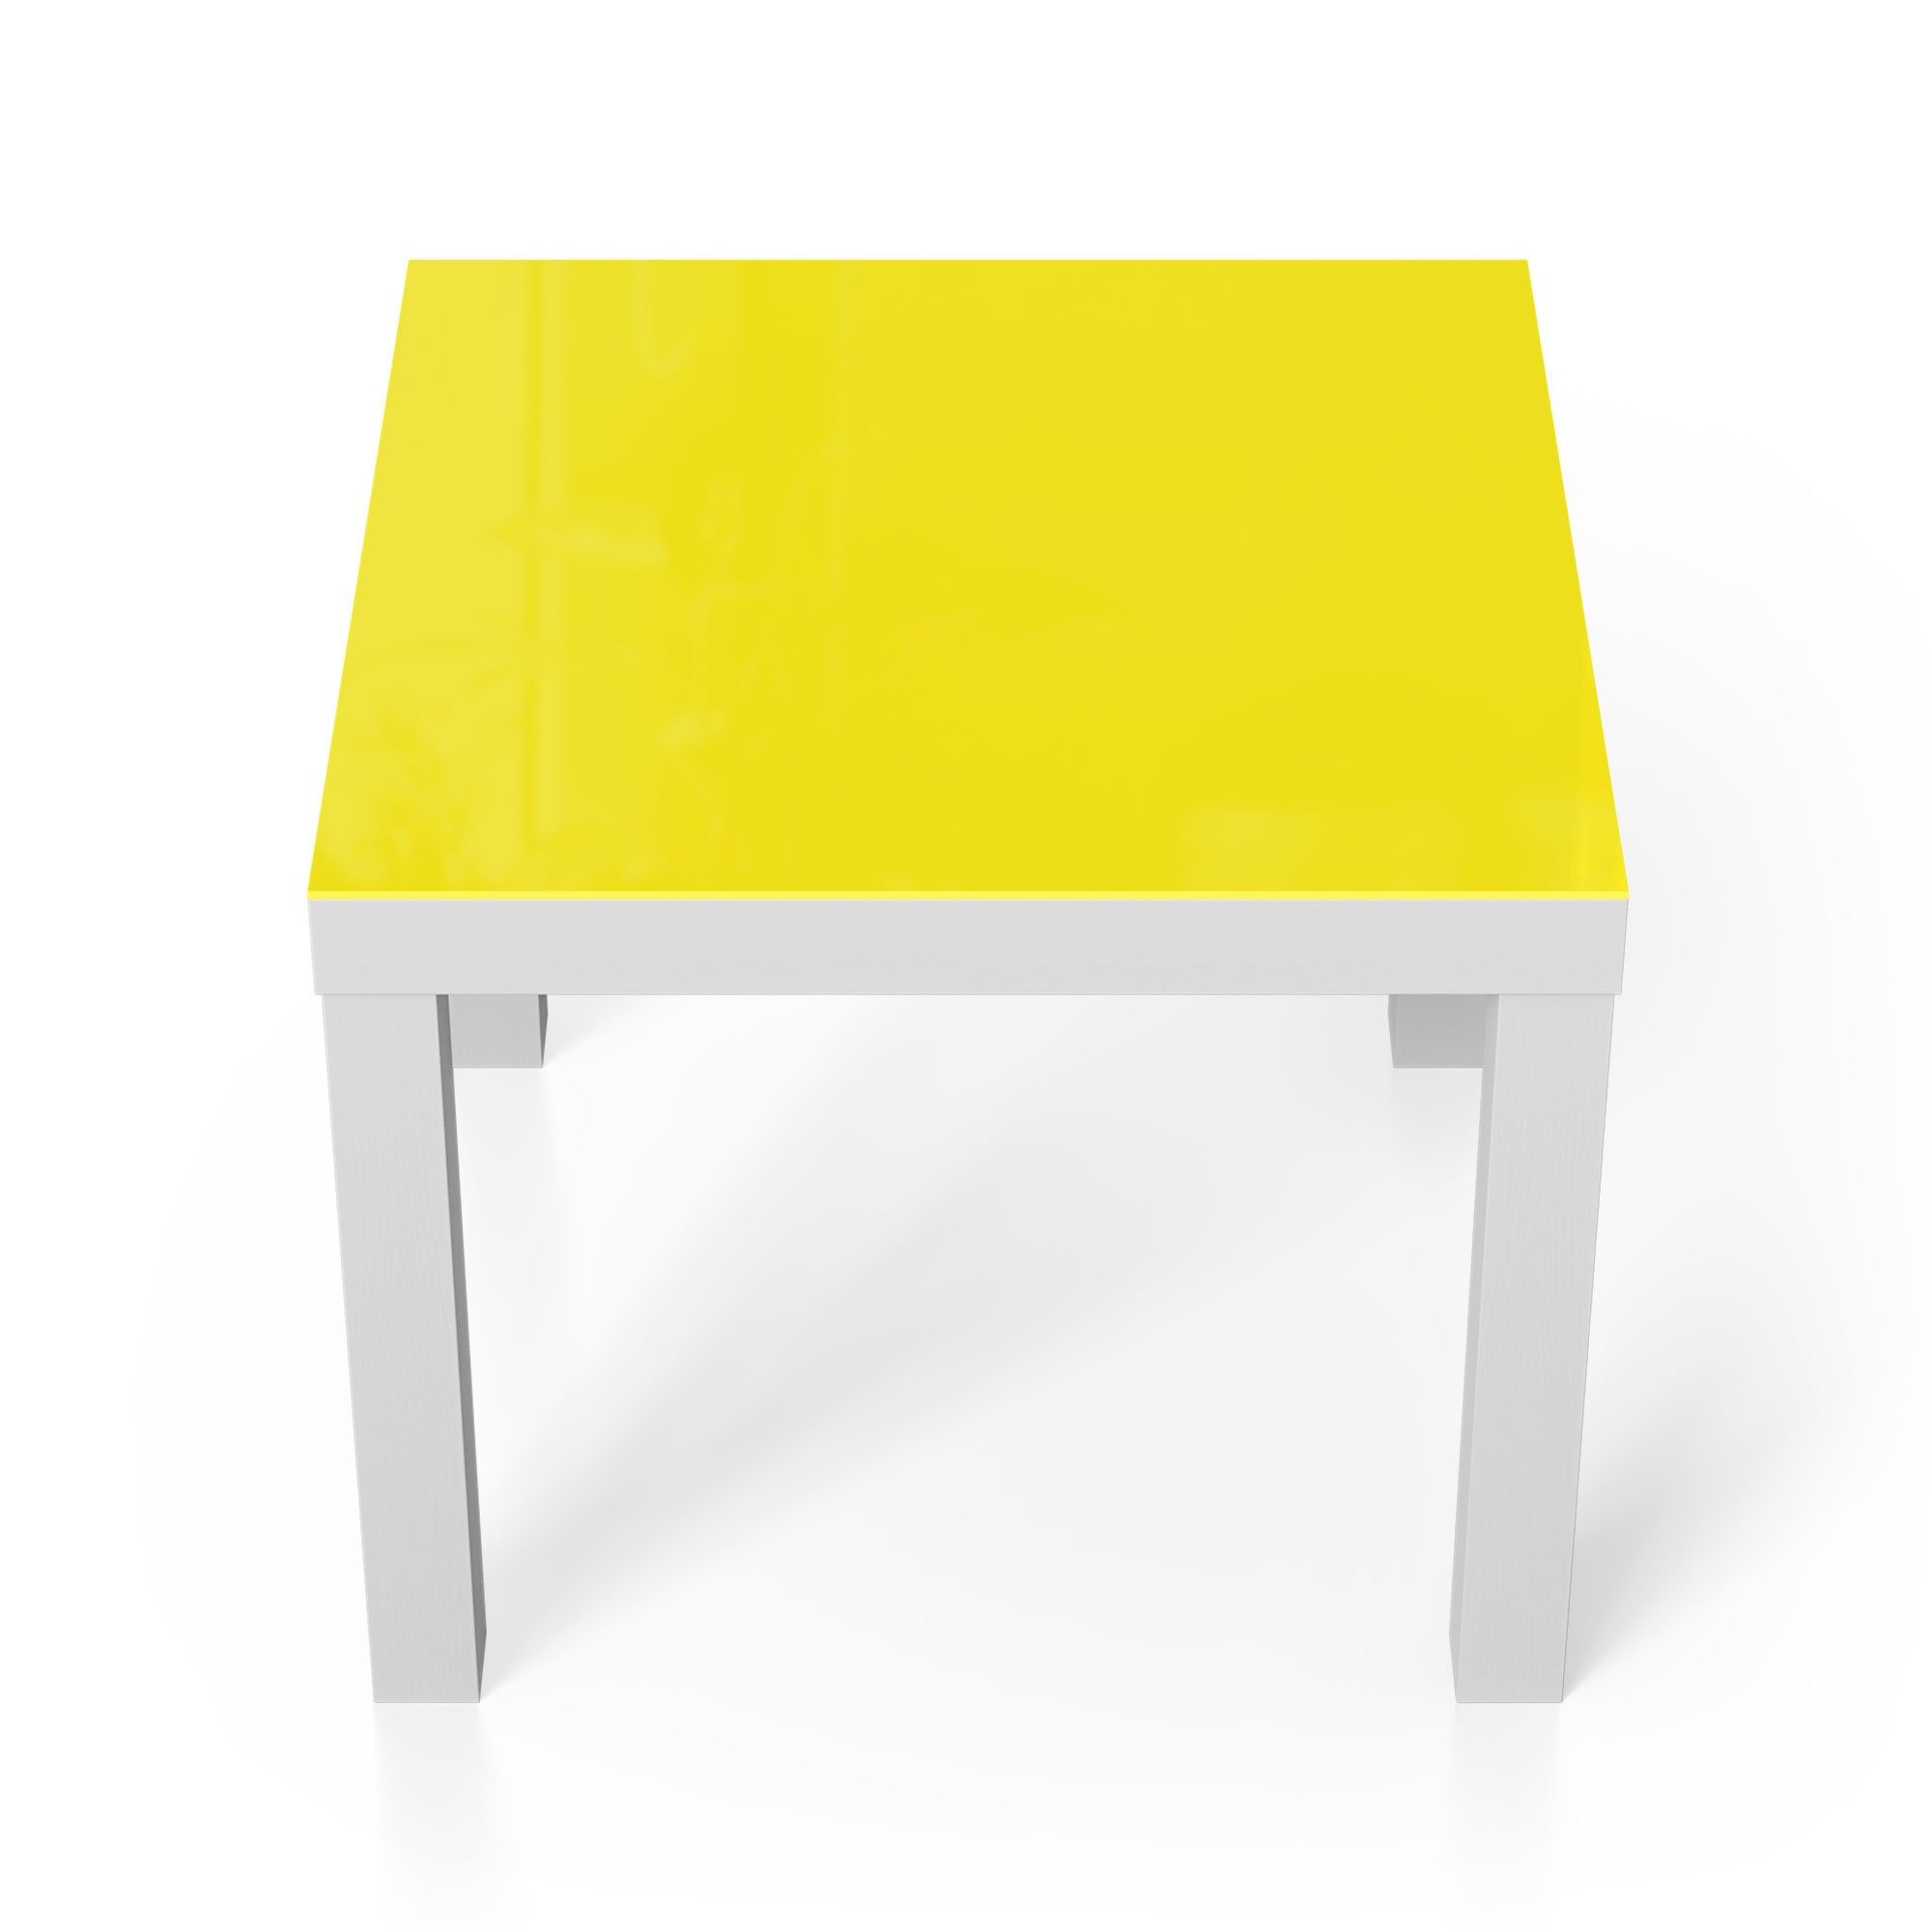 DEQORI Couchtisch 'Unifarben - Gelb', Beistelltisch modern Glastisch Weiß Glas